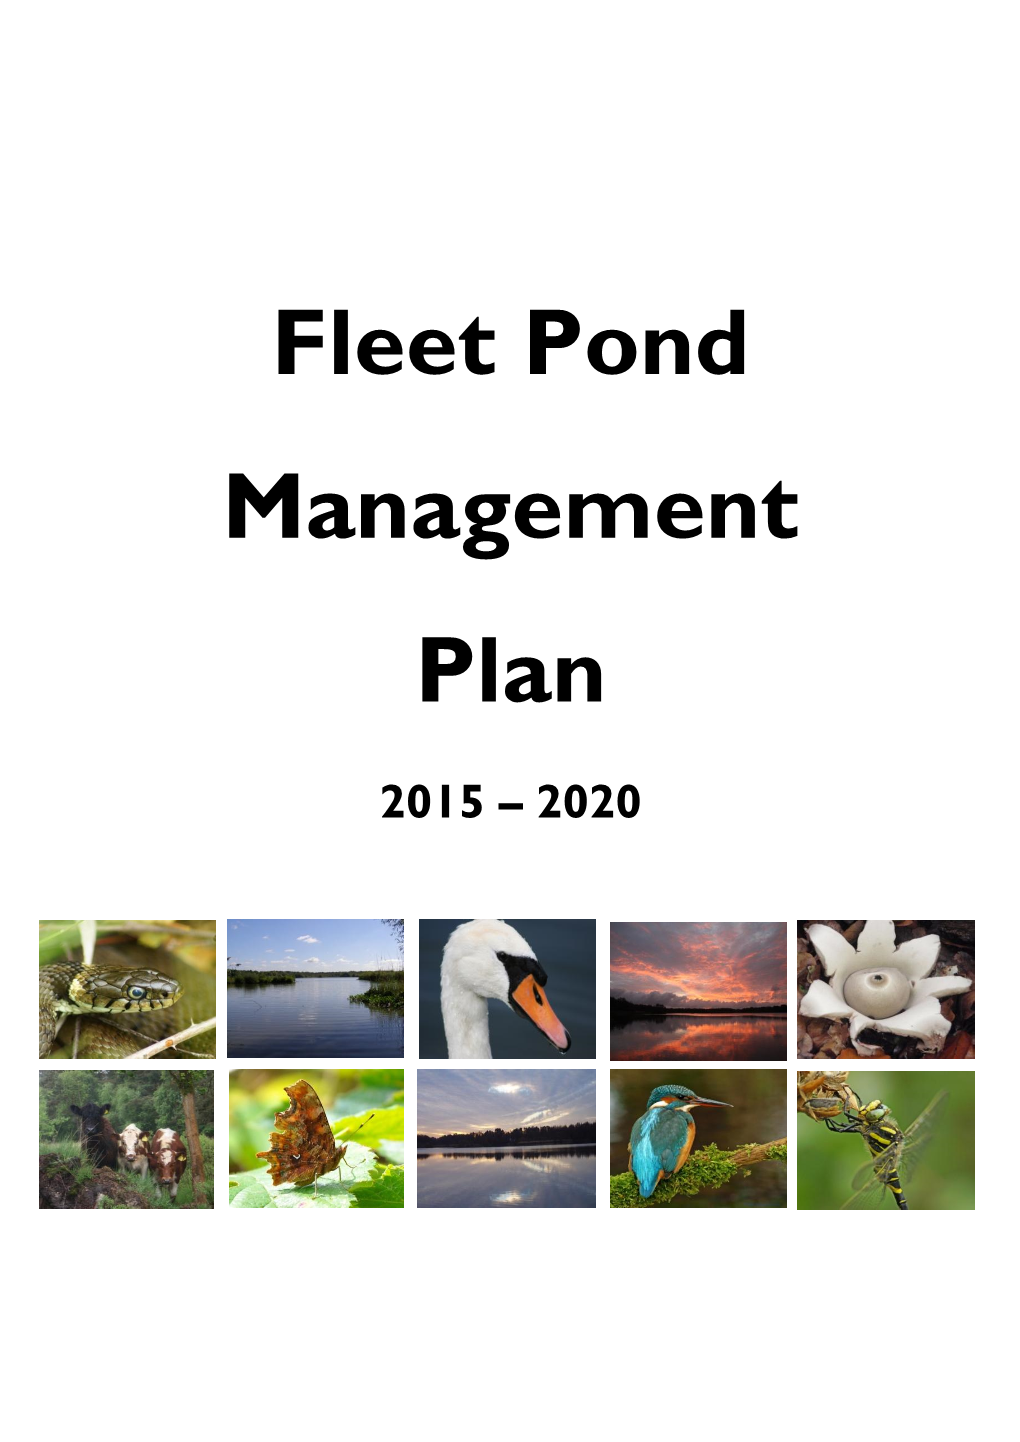 Fleet Pond Management Plan